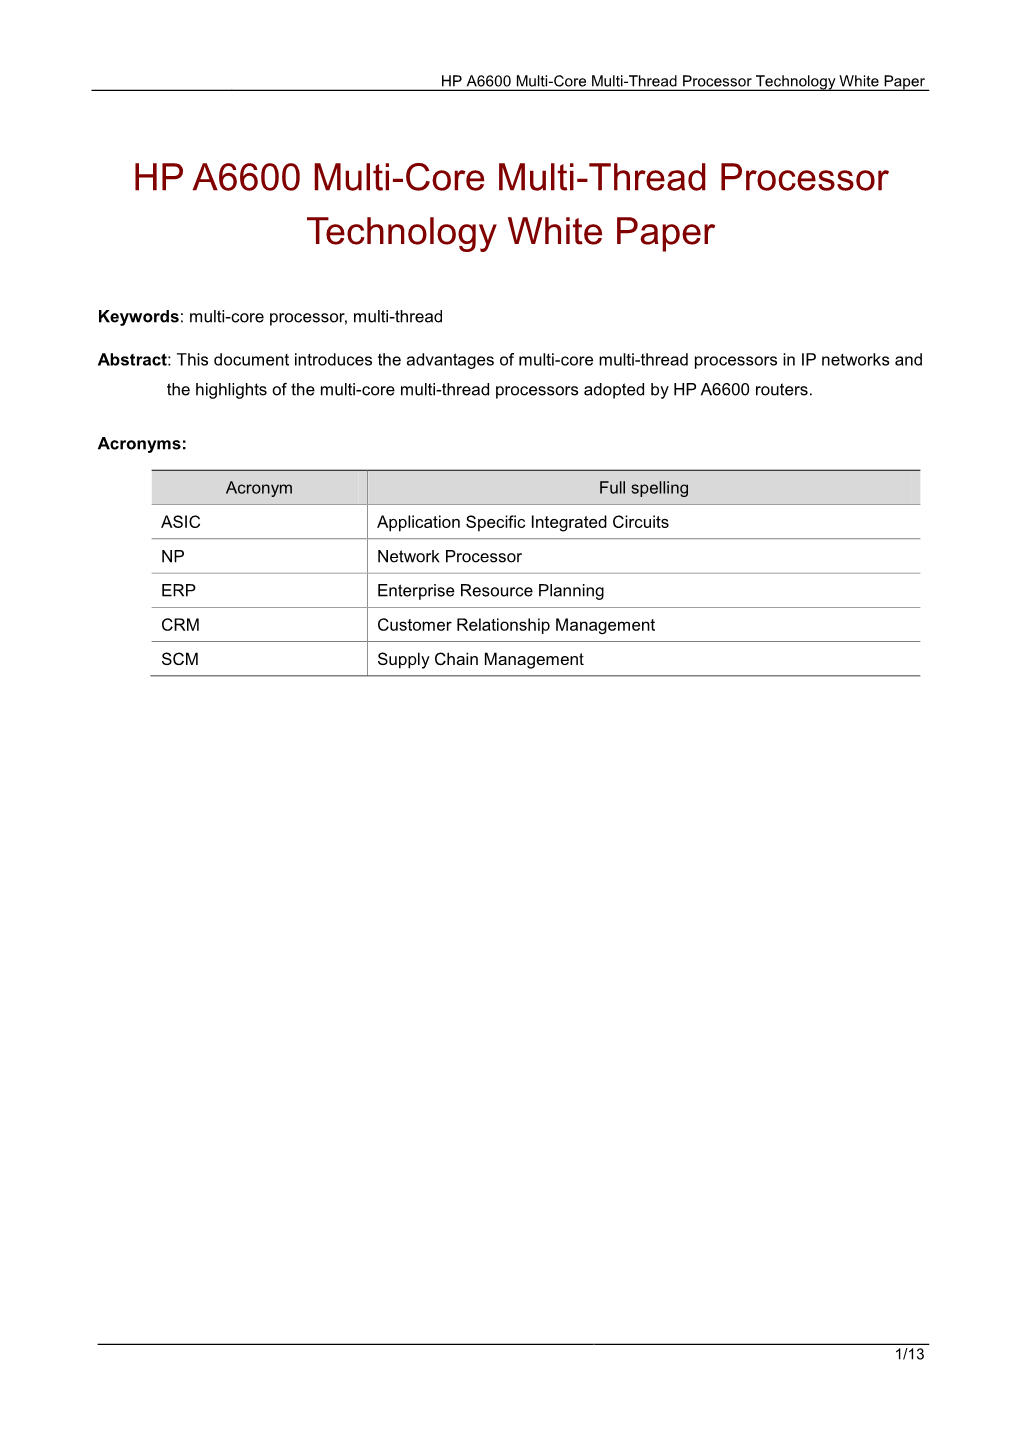 HP A6600 Multi-Core Multi-Thread Processor Technology White Paper